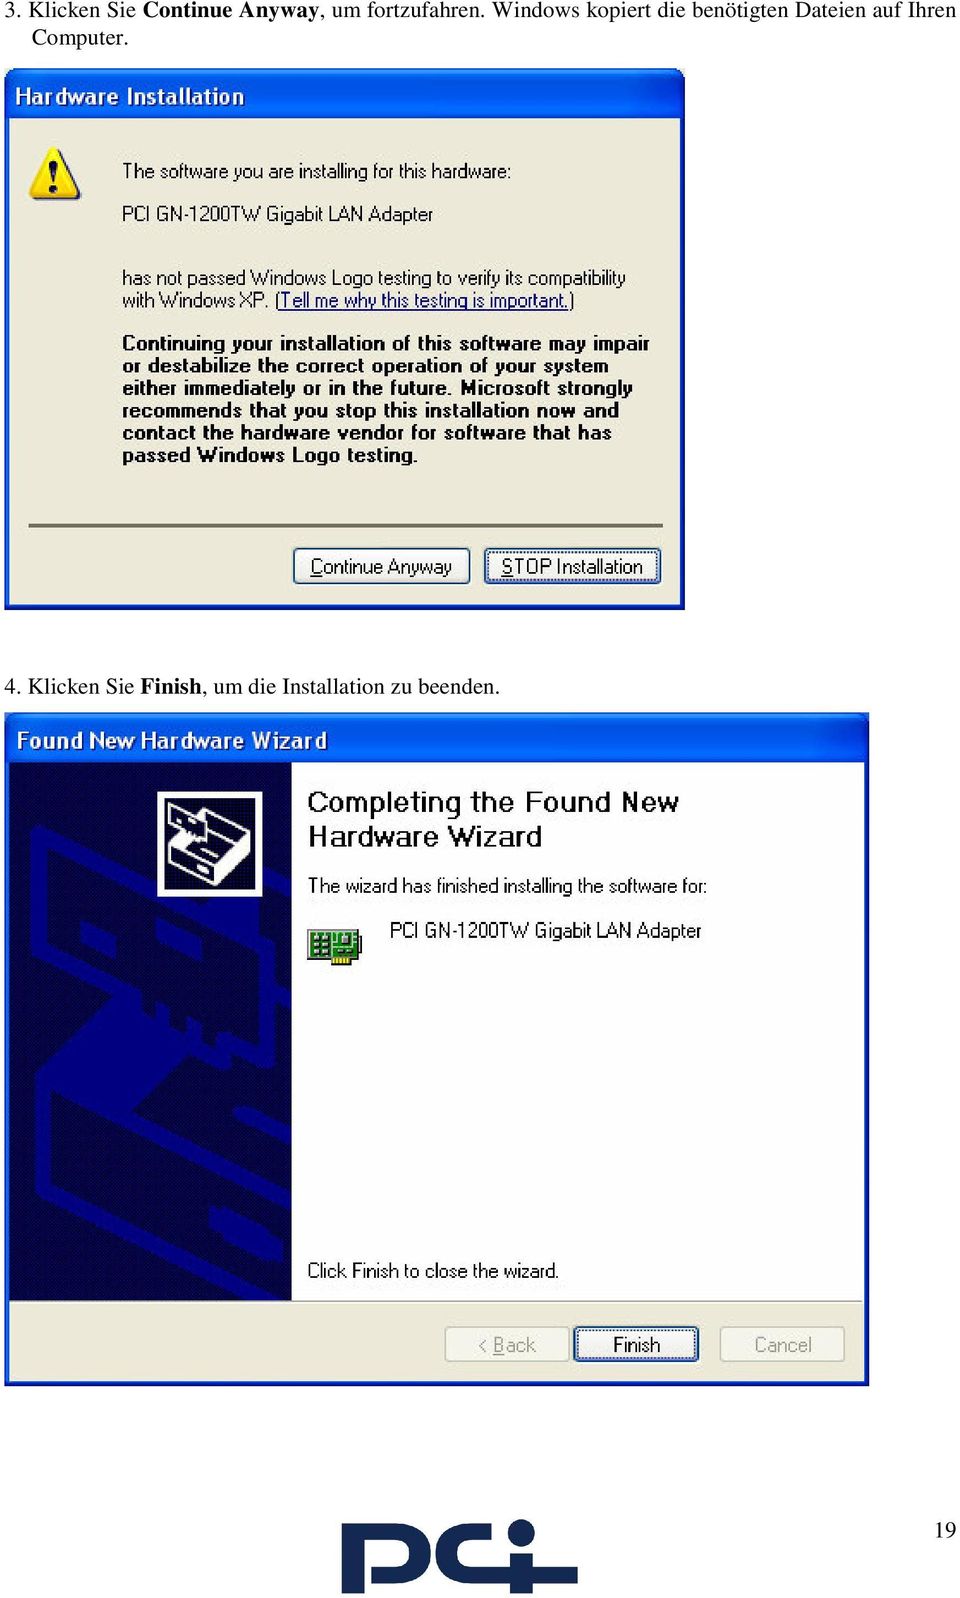 Windows kopiert die benötigten Dateien